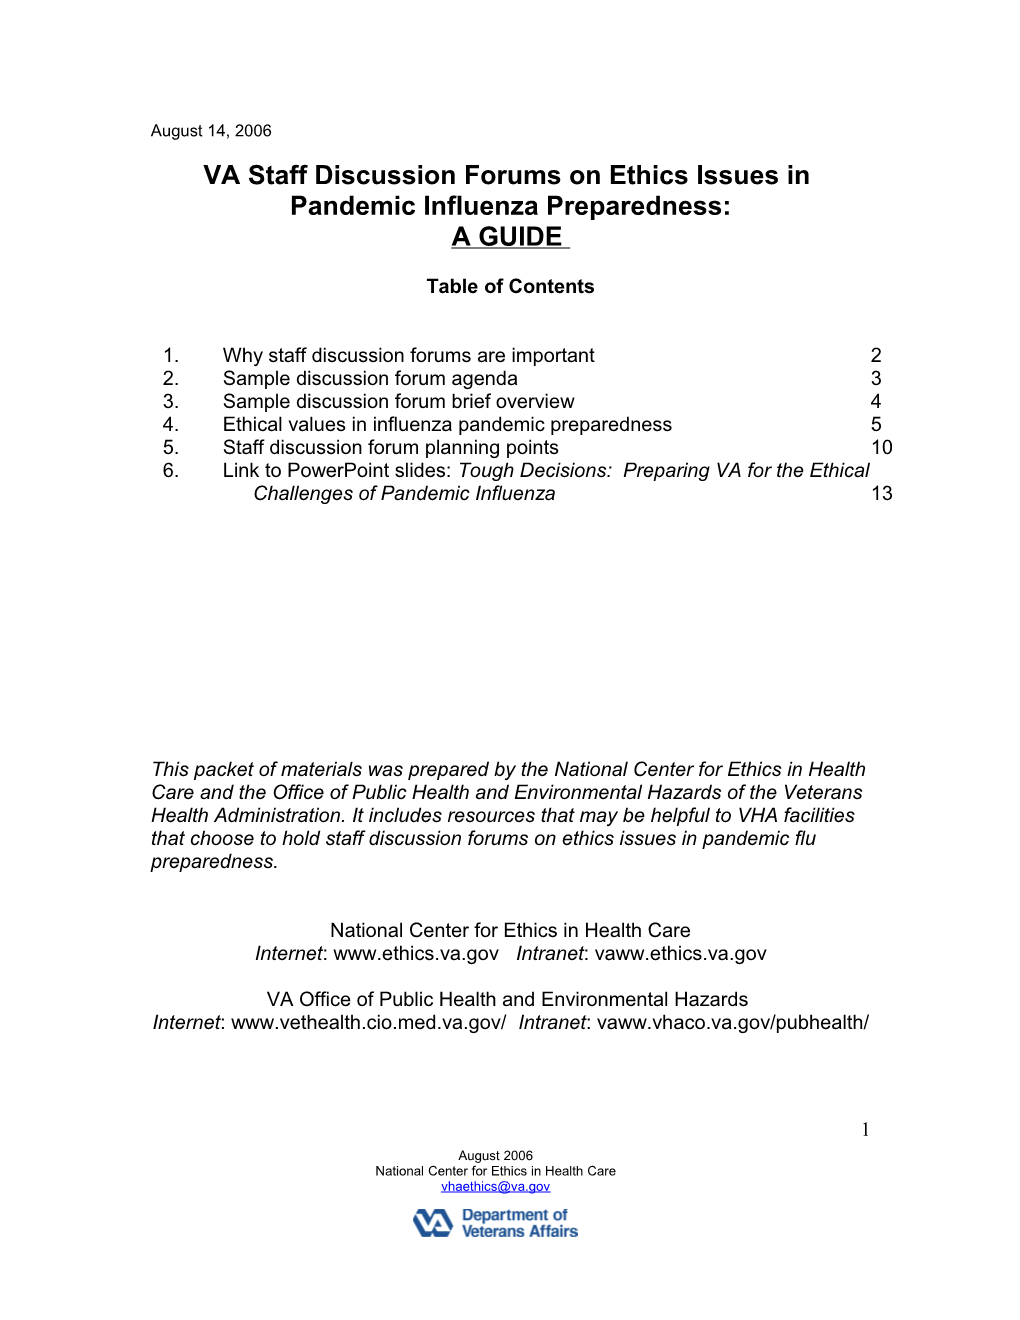 VA Staff Discussion Ethics Pandemic Flu Preparedness - U.S. Department of Veterans Affairs